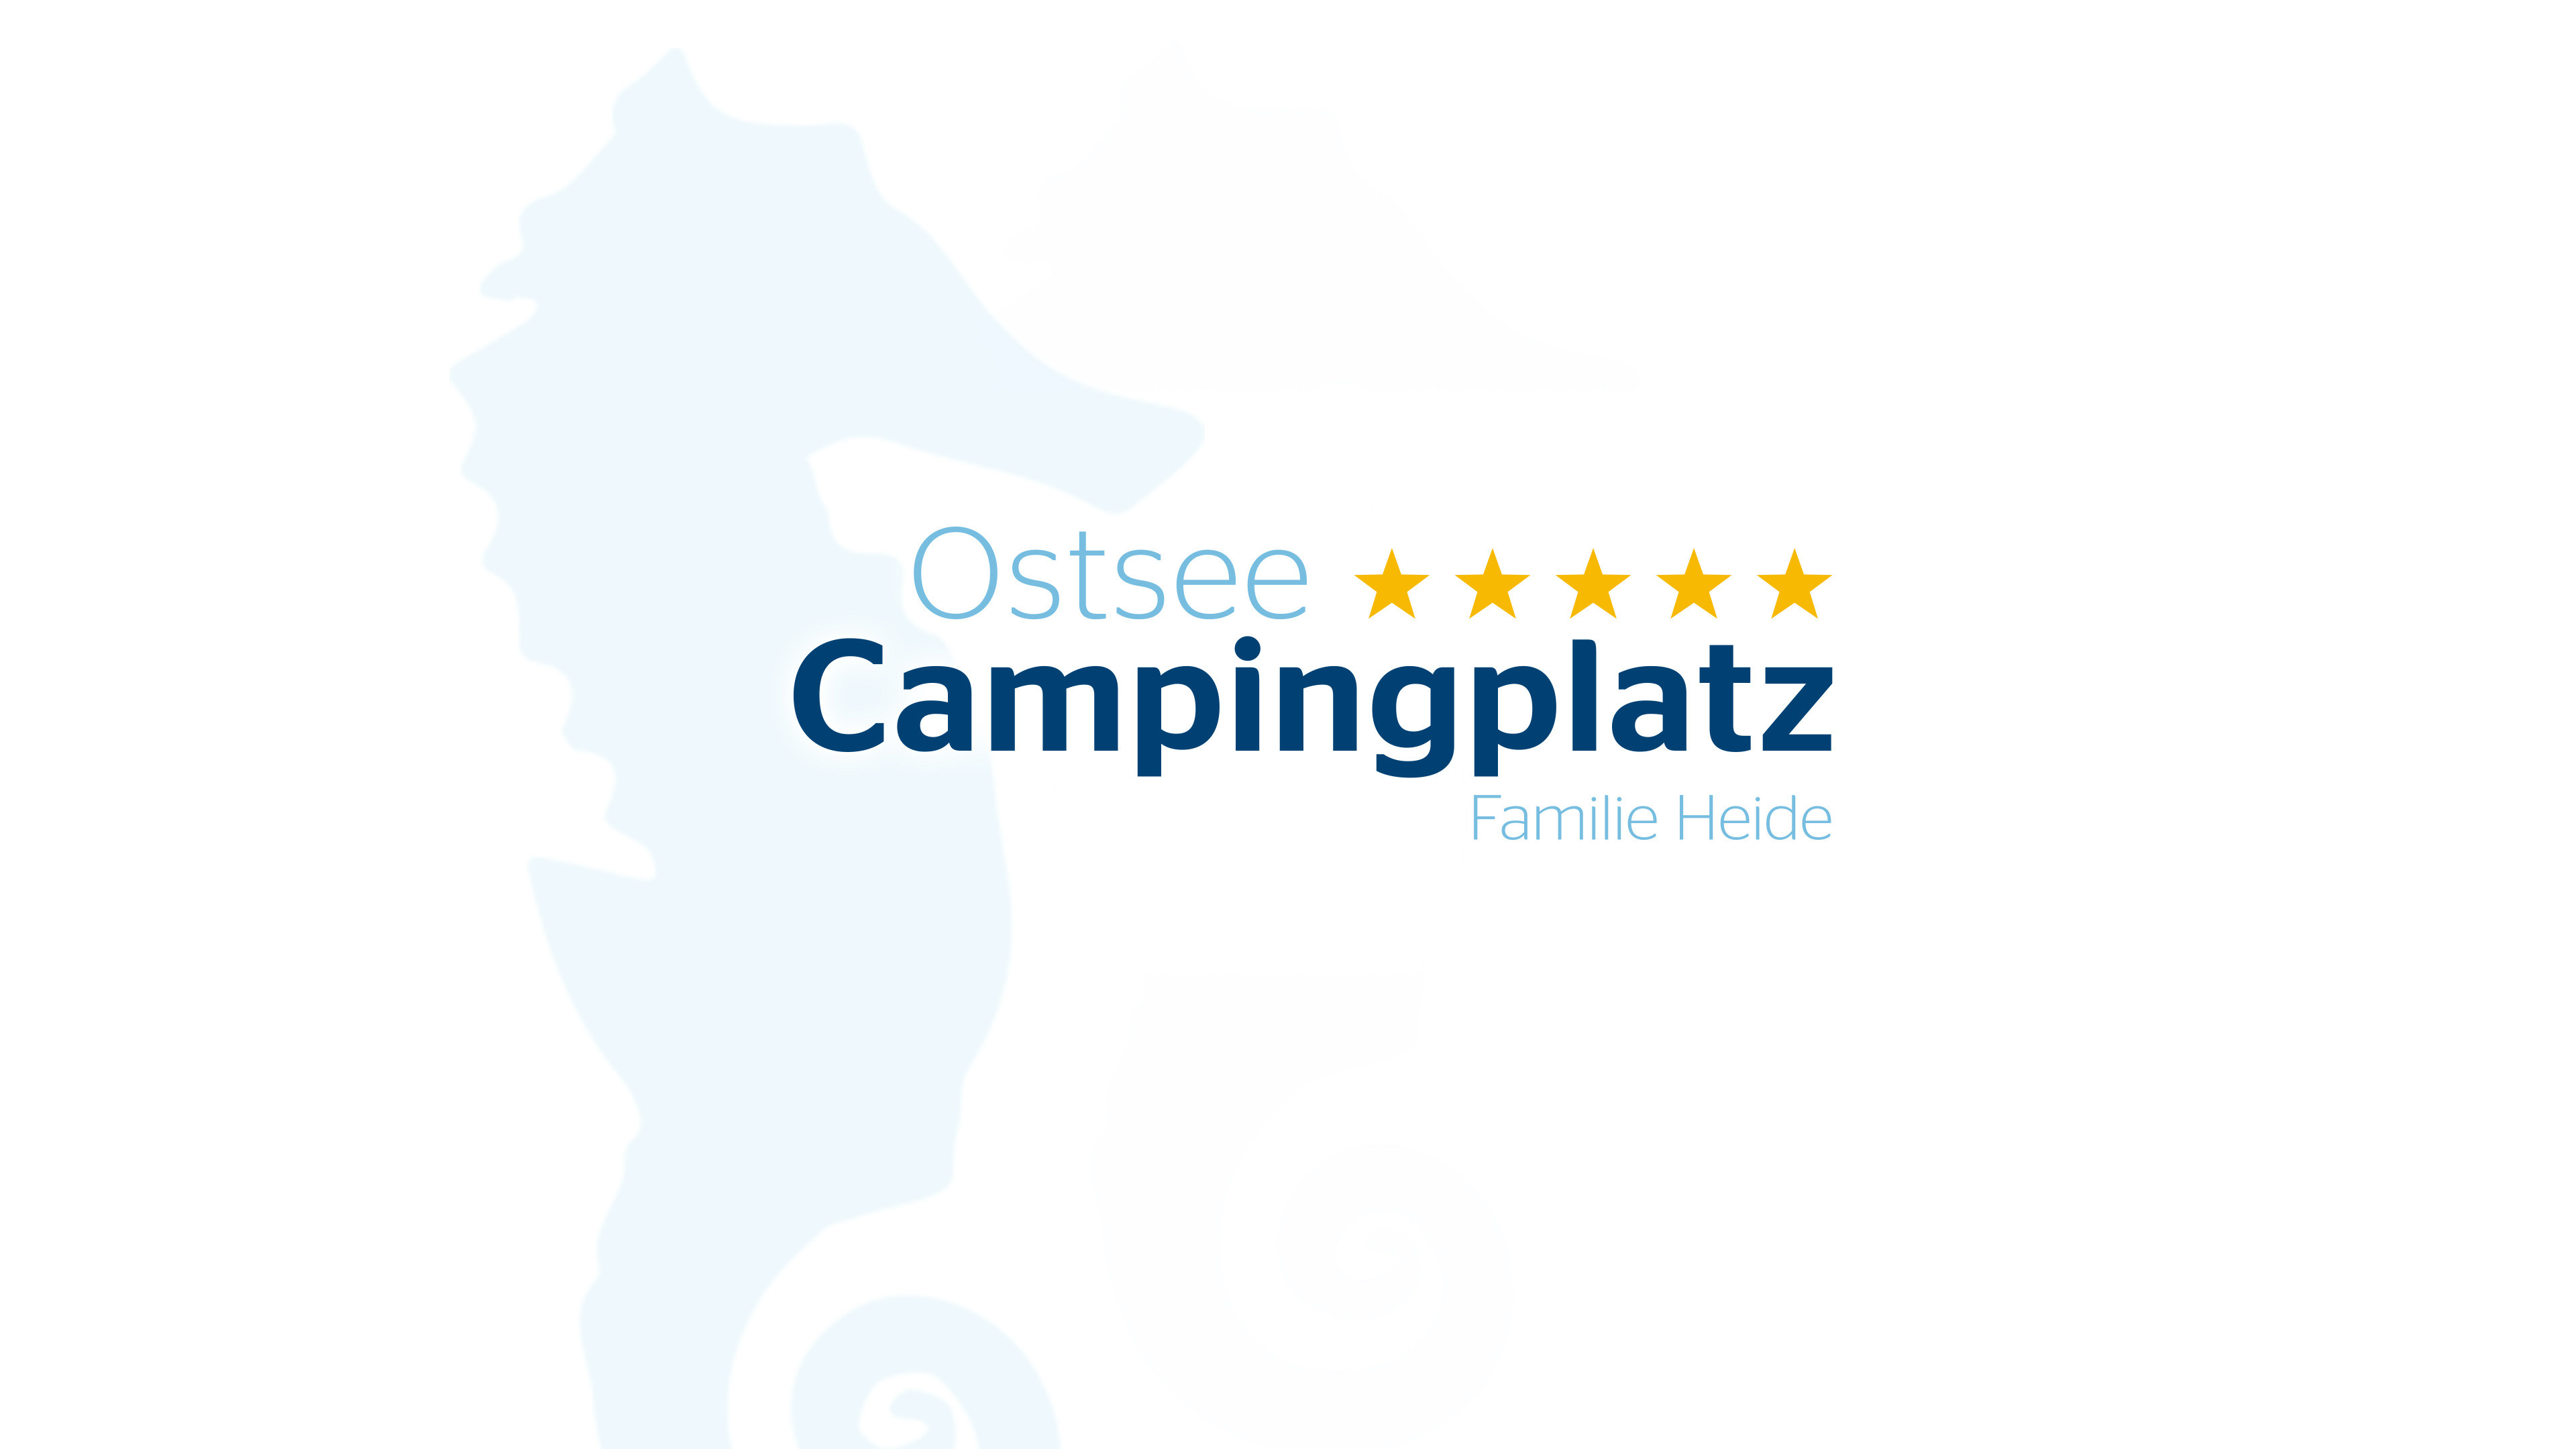 Ostsee Campingplatz Logo mit fünf gelben Sternen